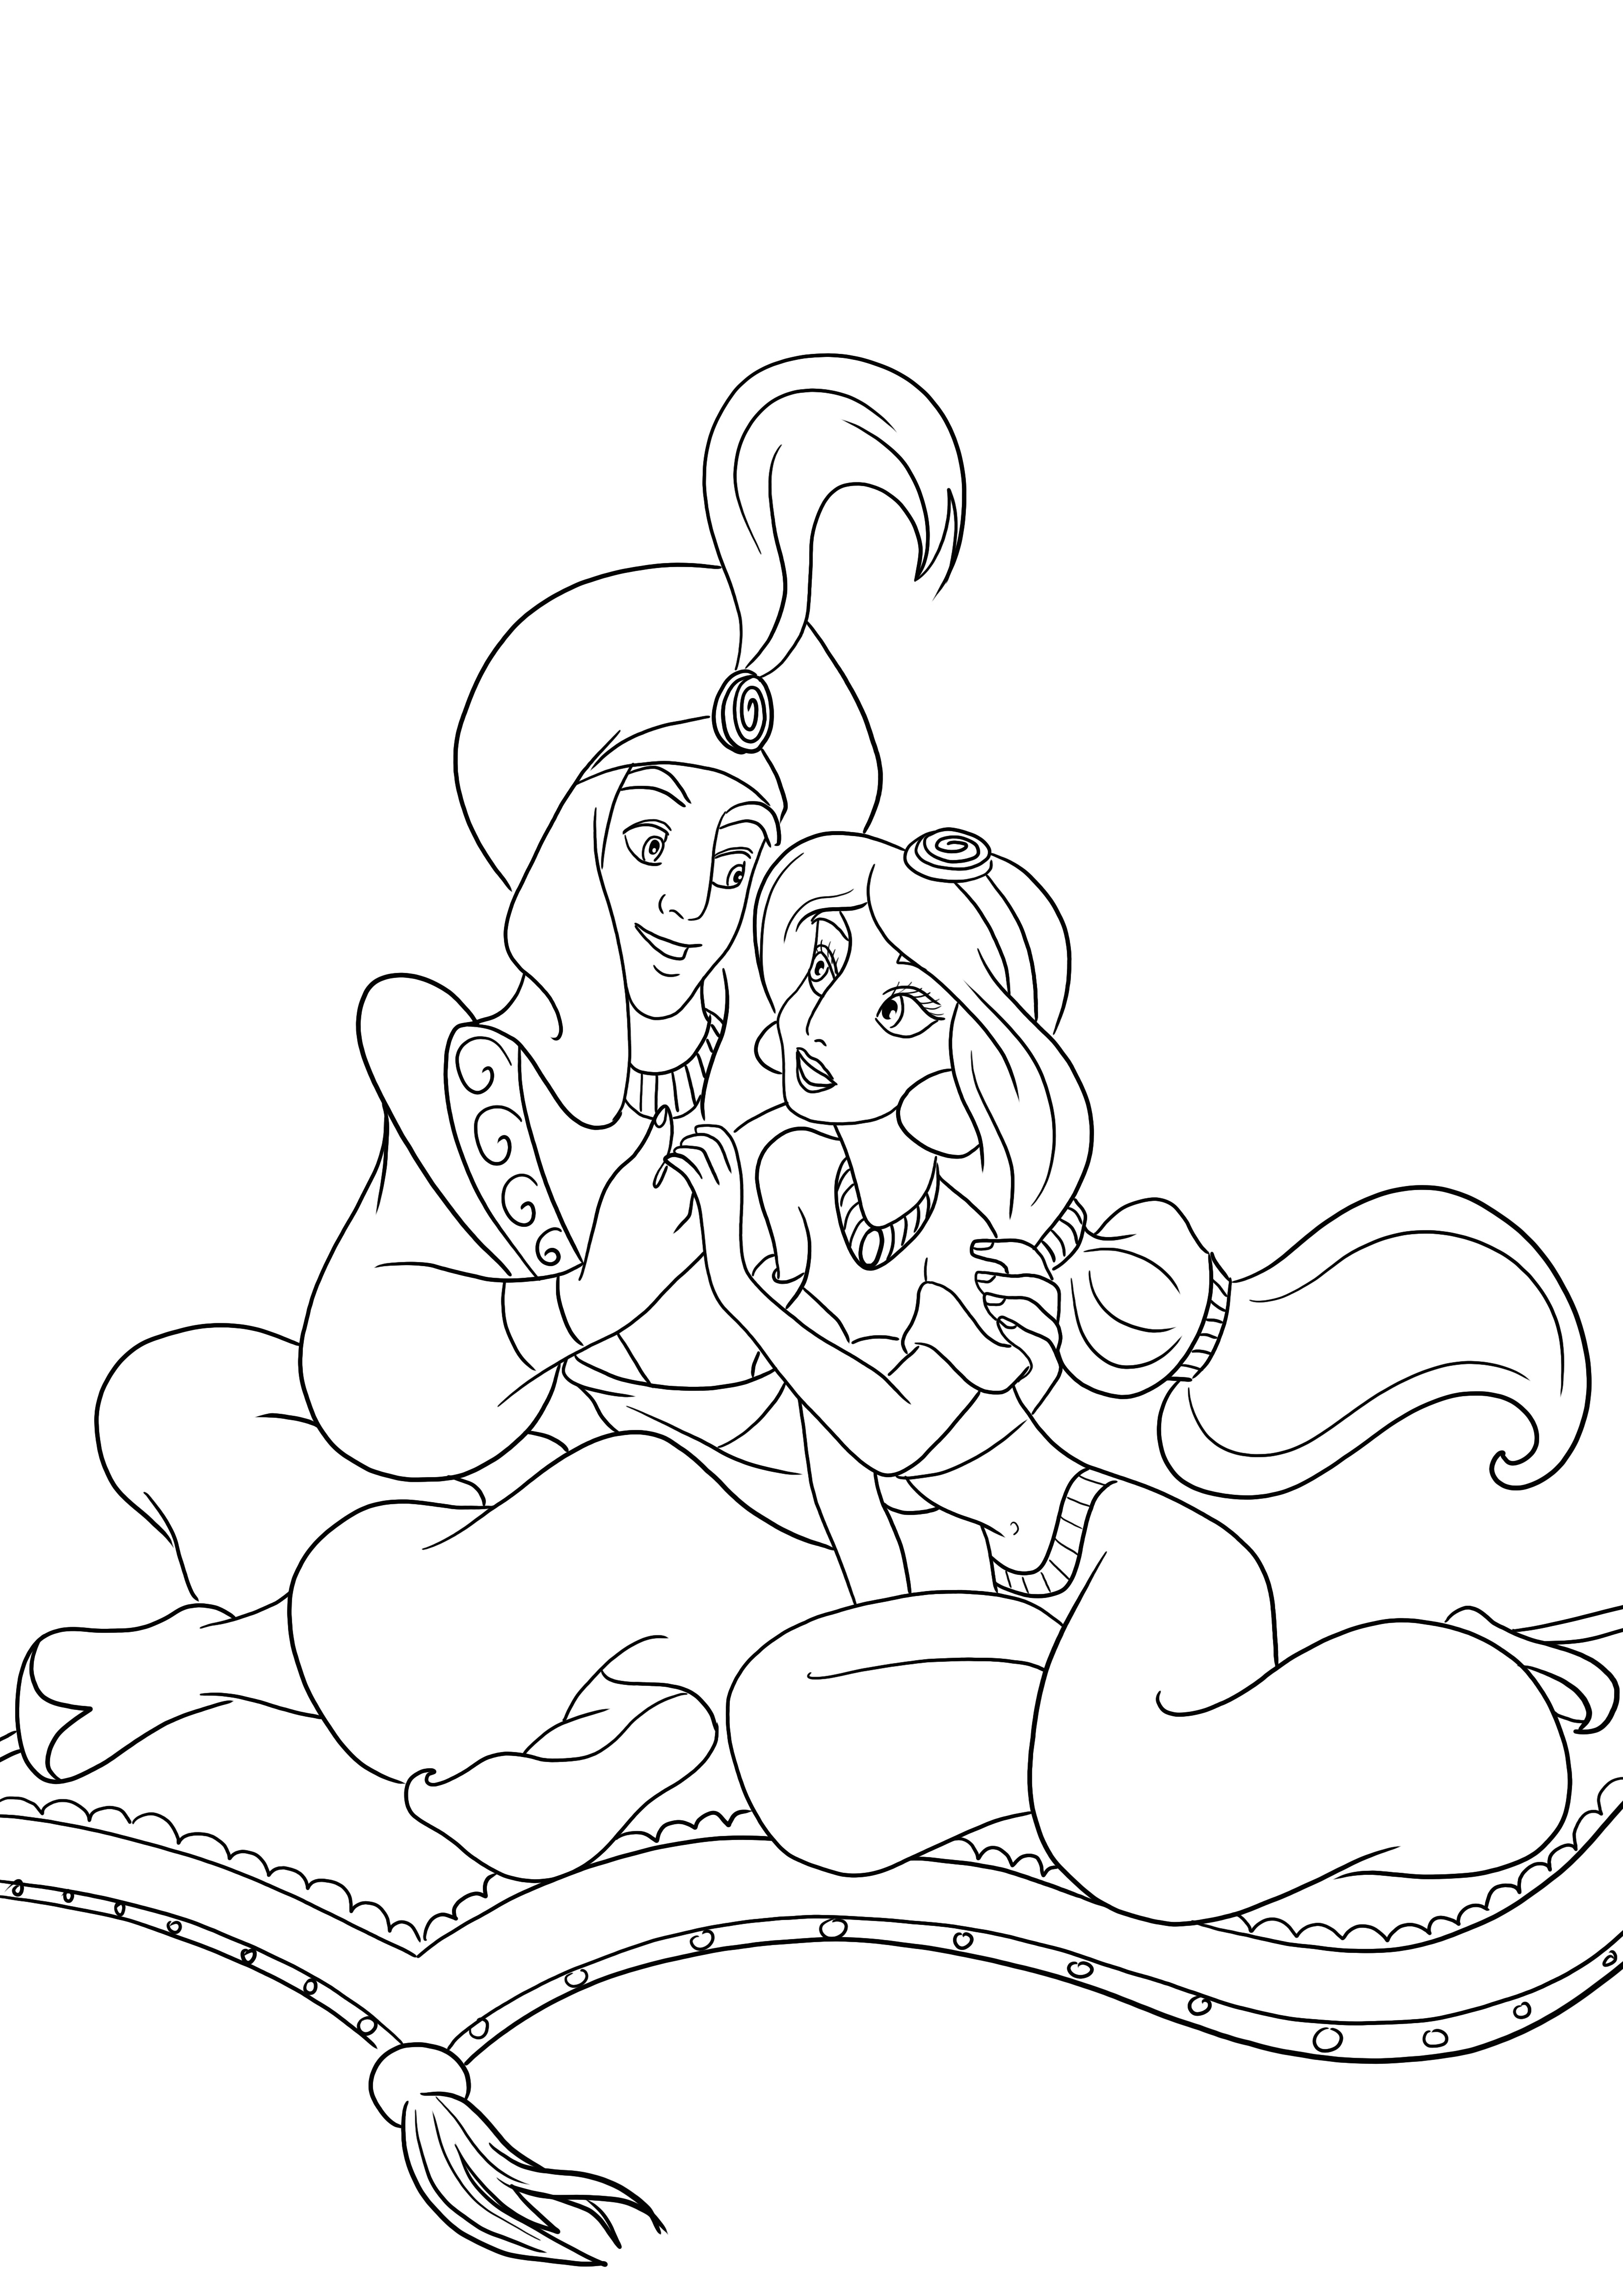 Aladdin y Jasmine están enamorados y listos para colorear e imprimir gratis